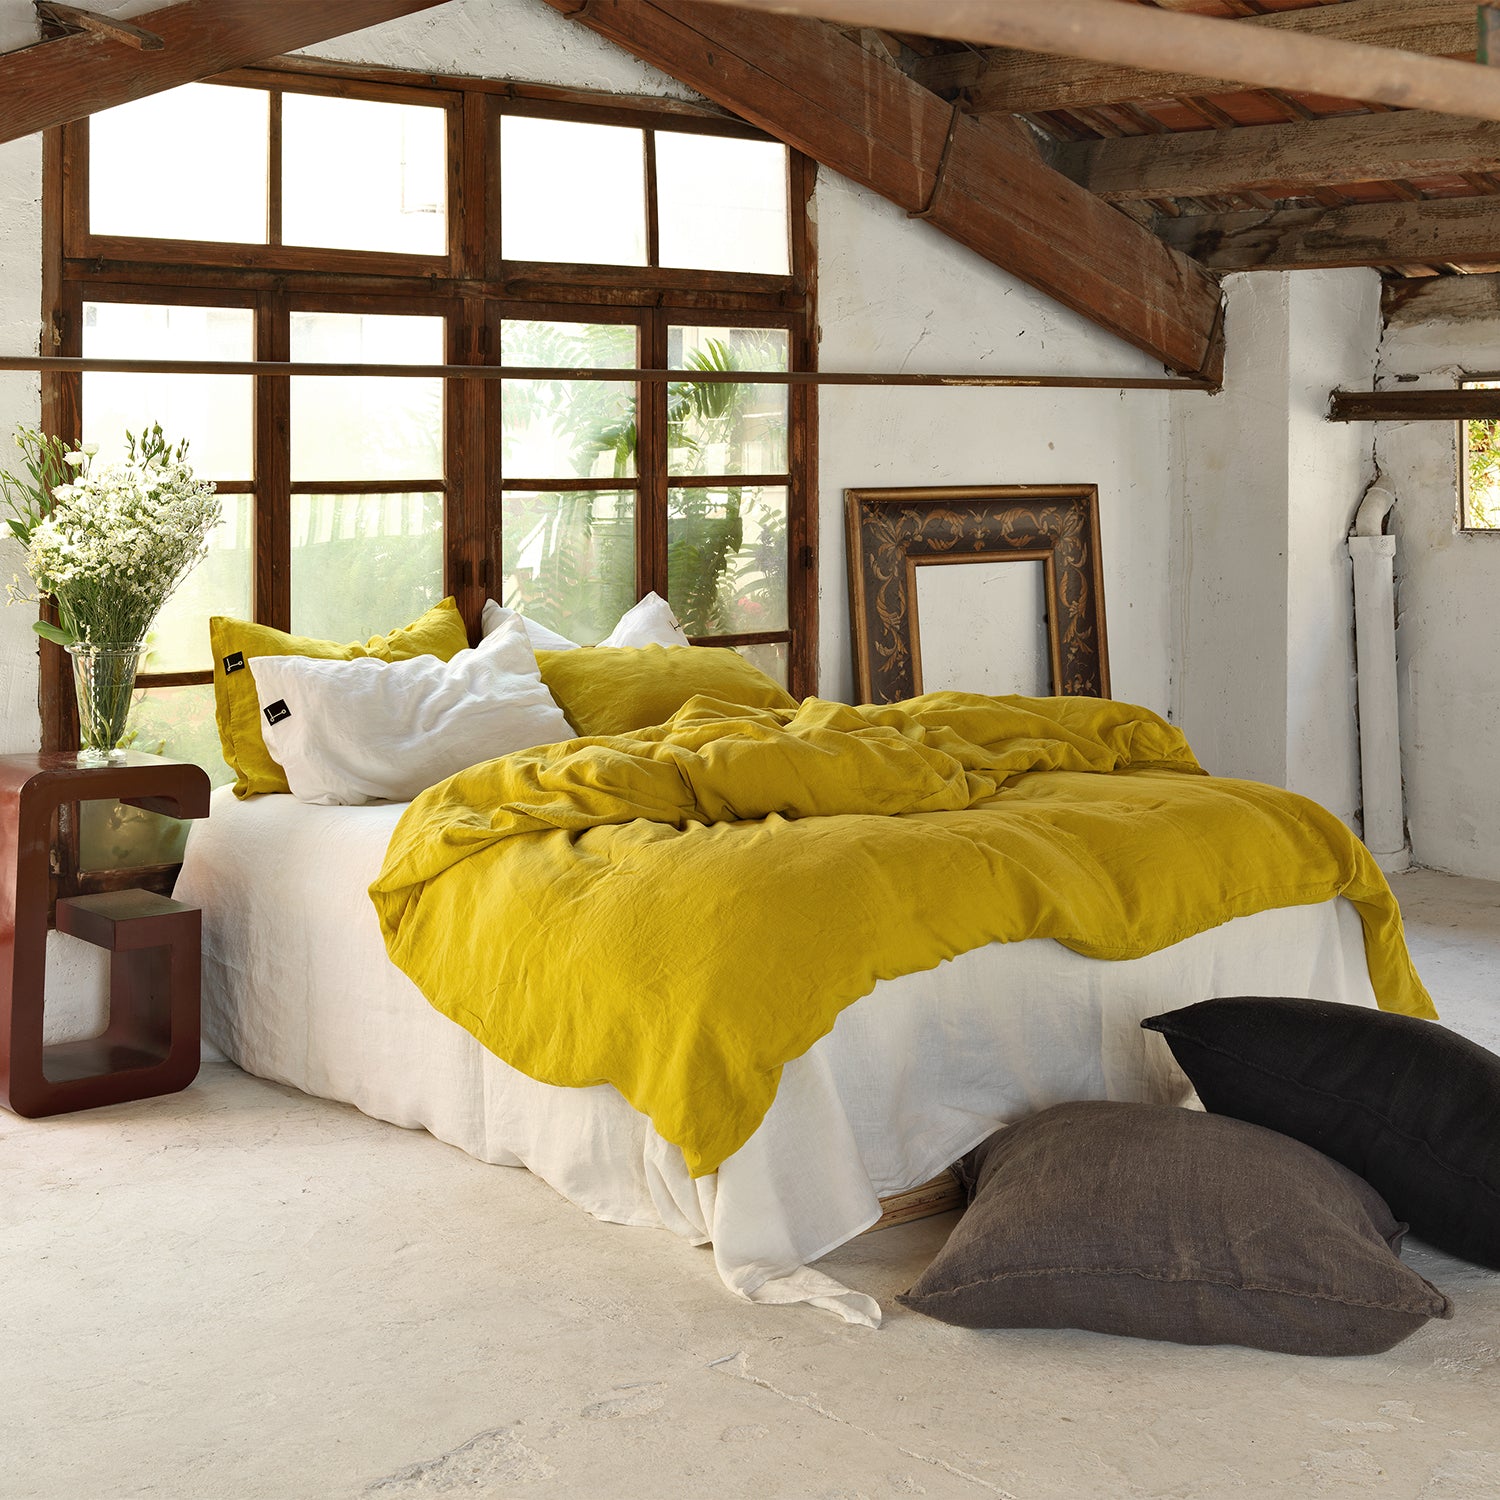 Vista general de cama con Funda nórdica de lino de color mostaza con bajera blanca y almohadas a juego.